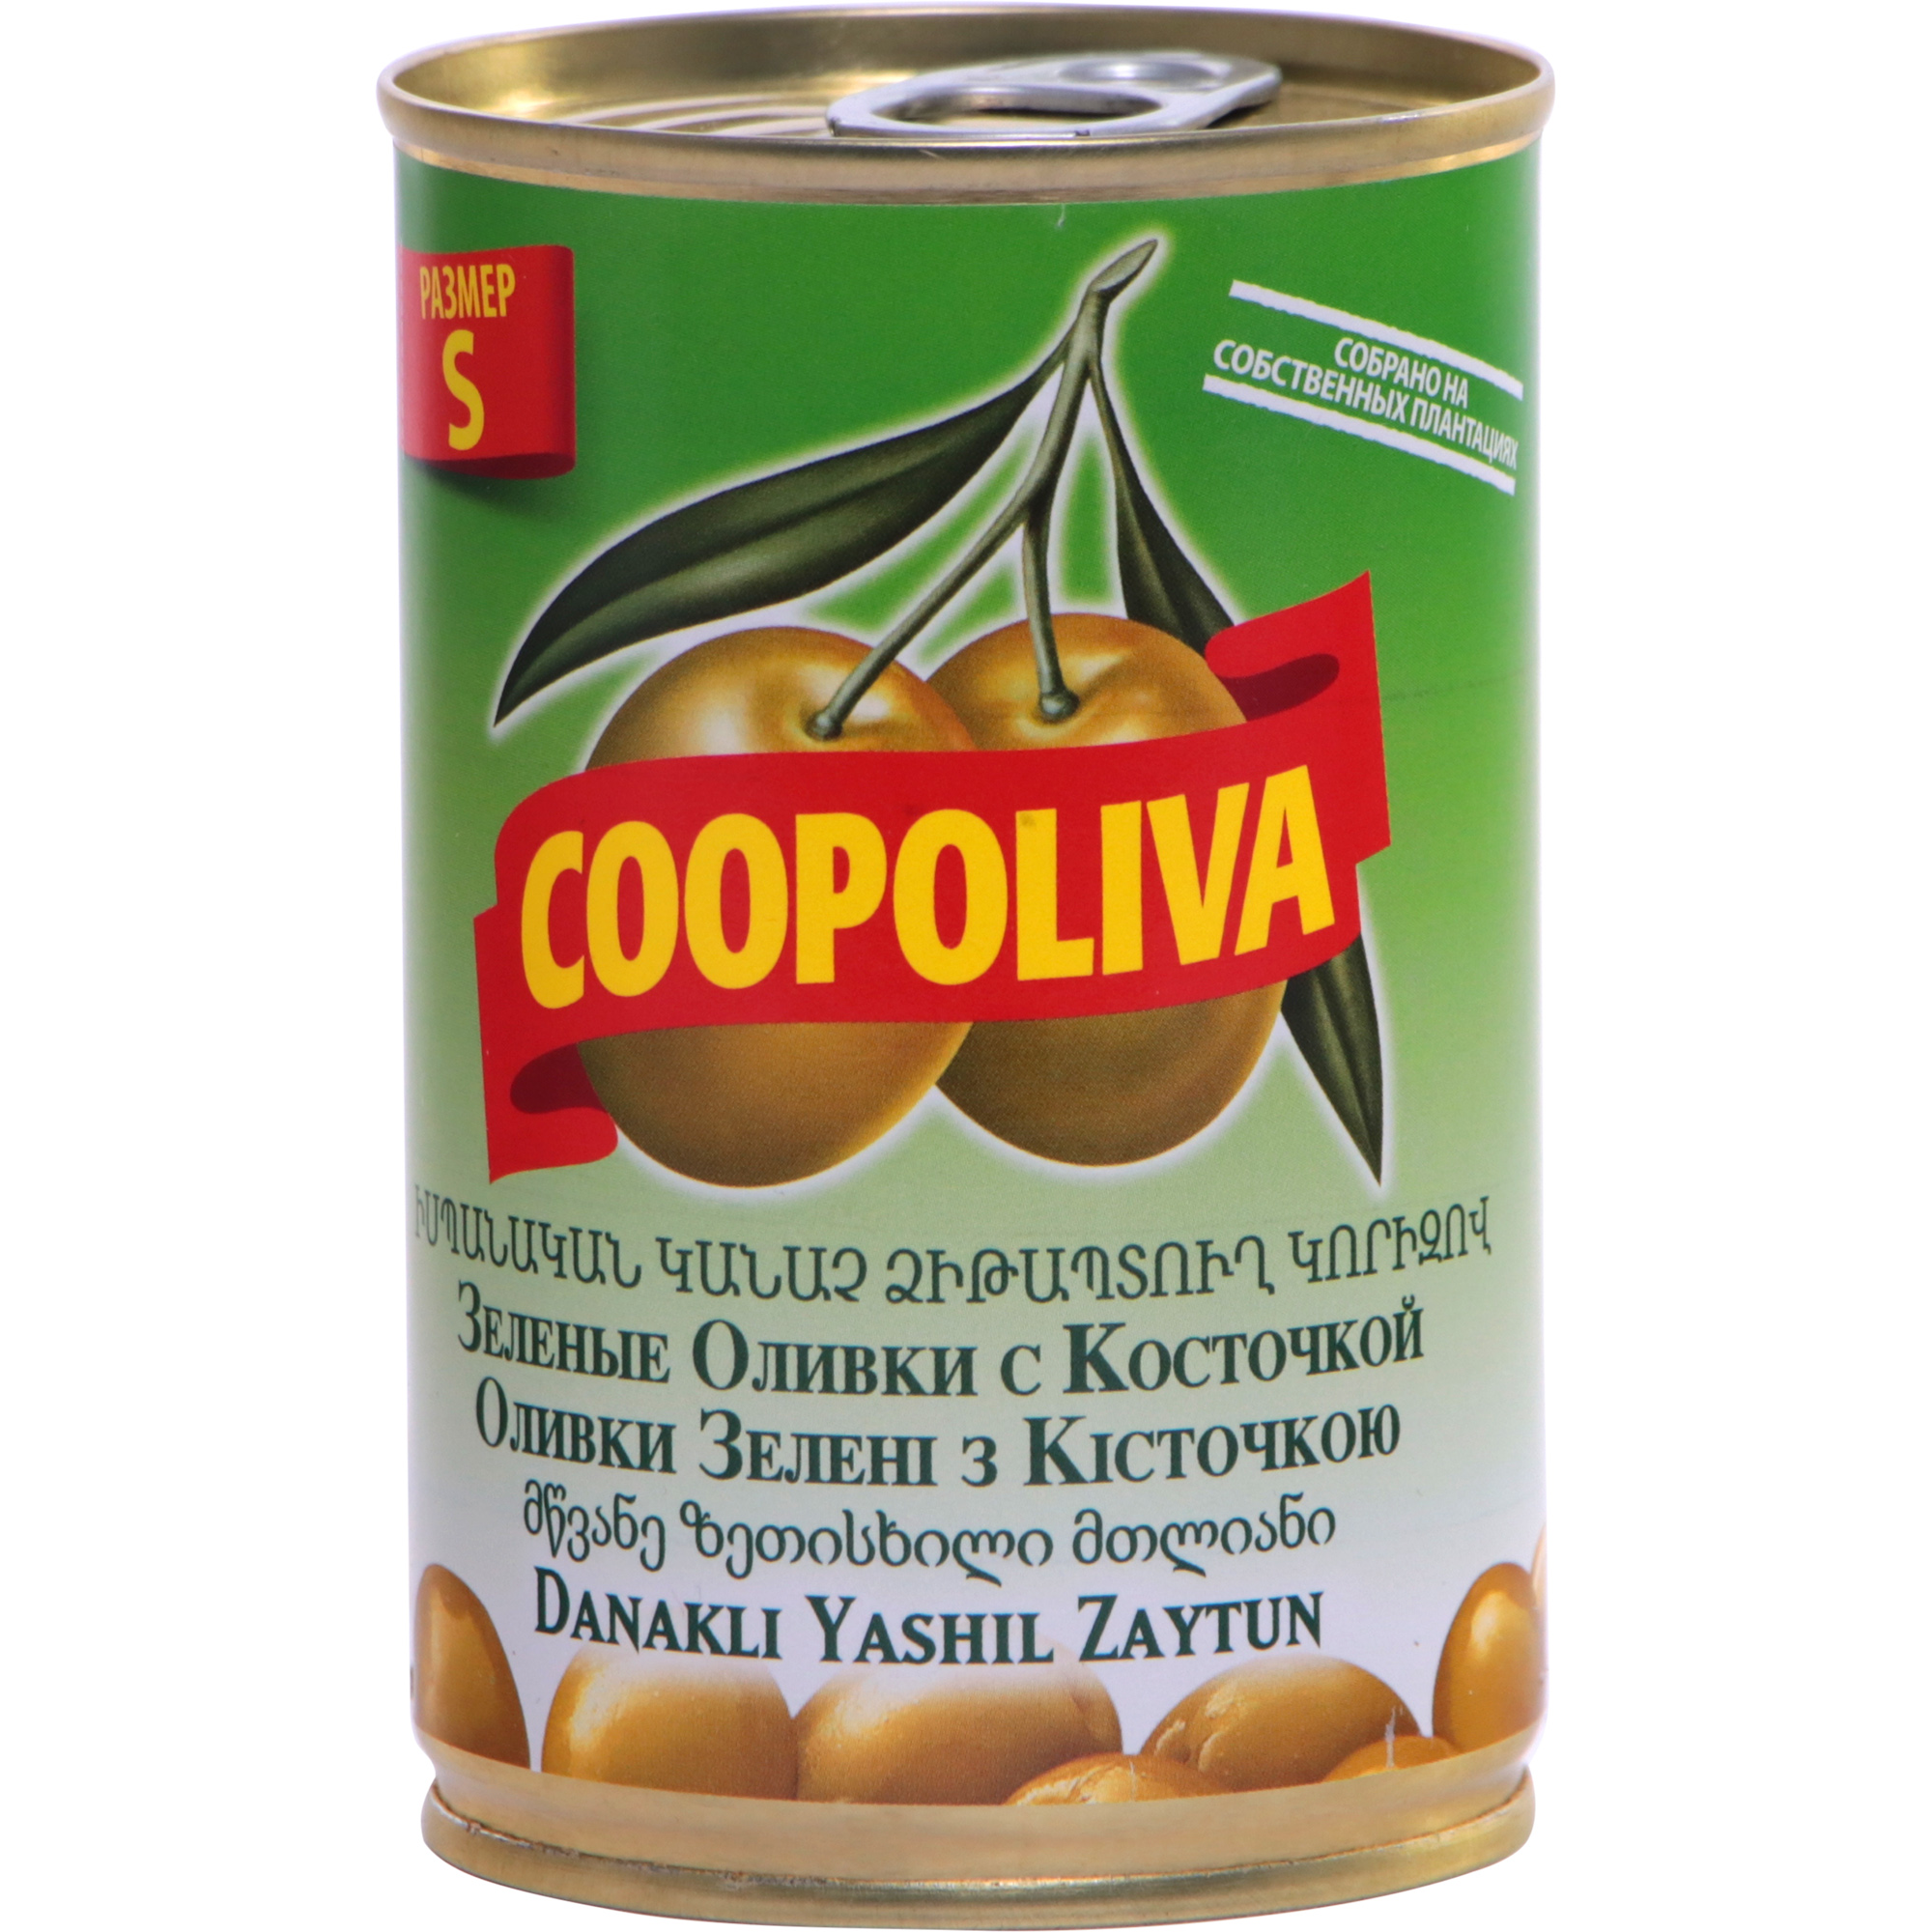 Оливки COOPOLIVA S с косточкой, 300 г оливки monini с косточкой 300 г